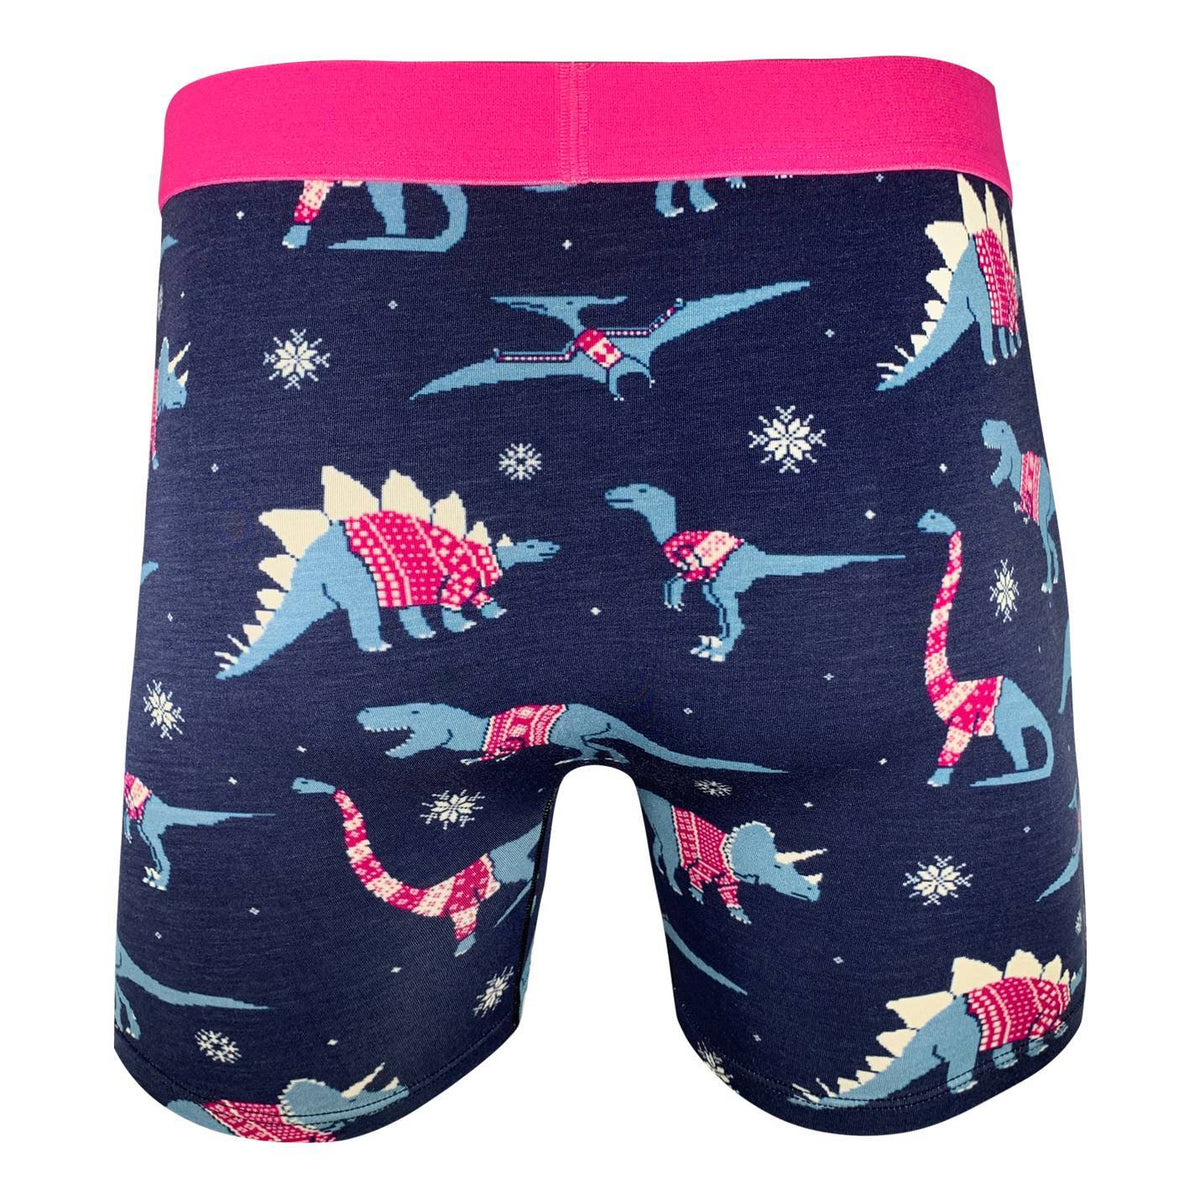 Buy Dinosaur Underwear, Kids